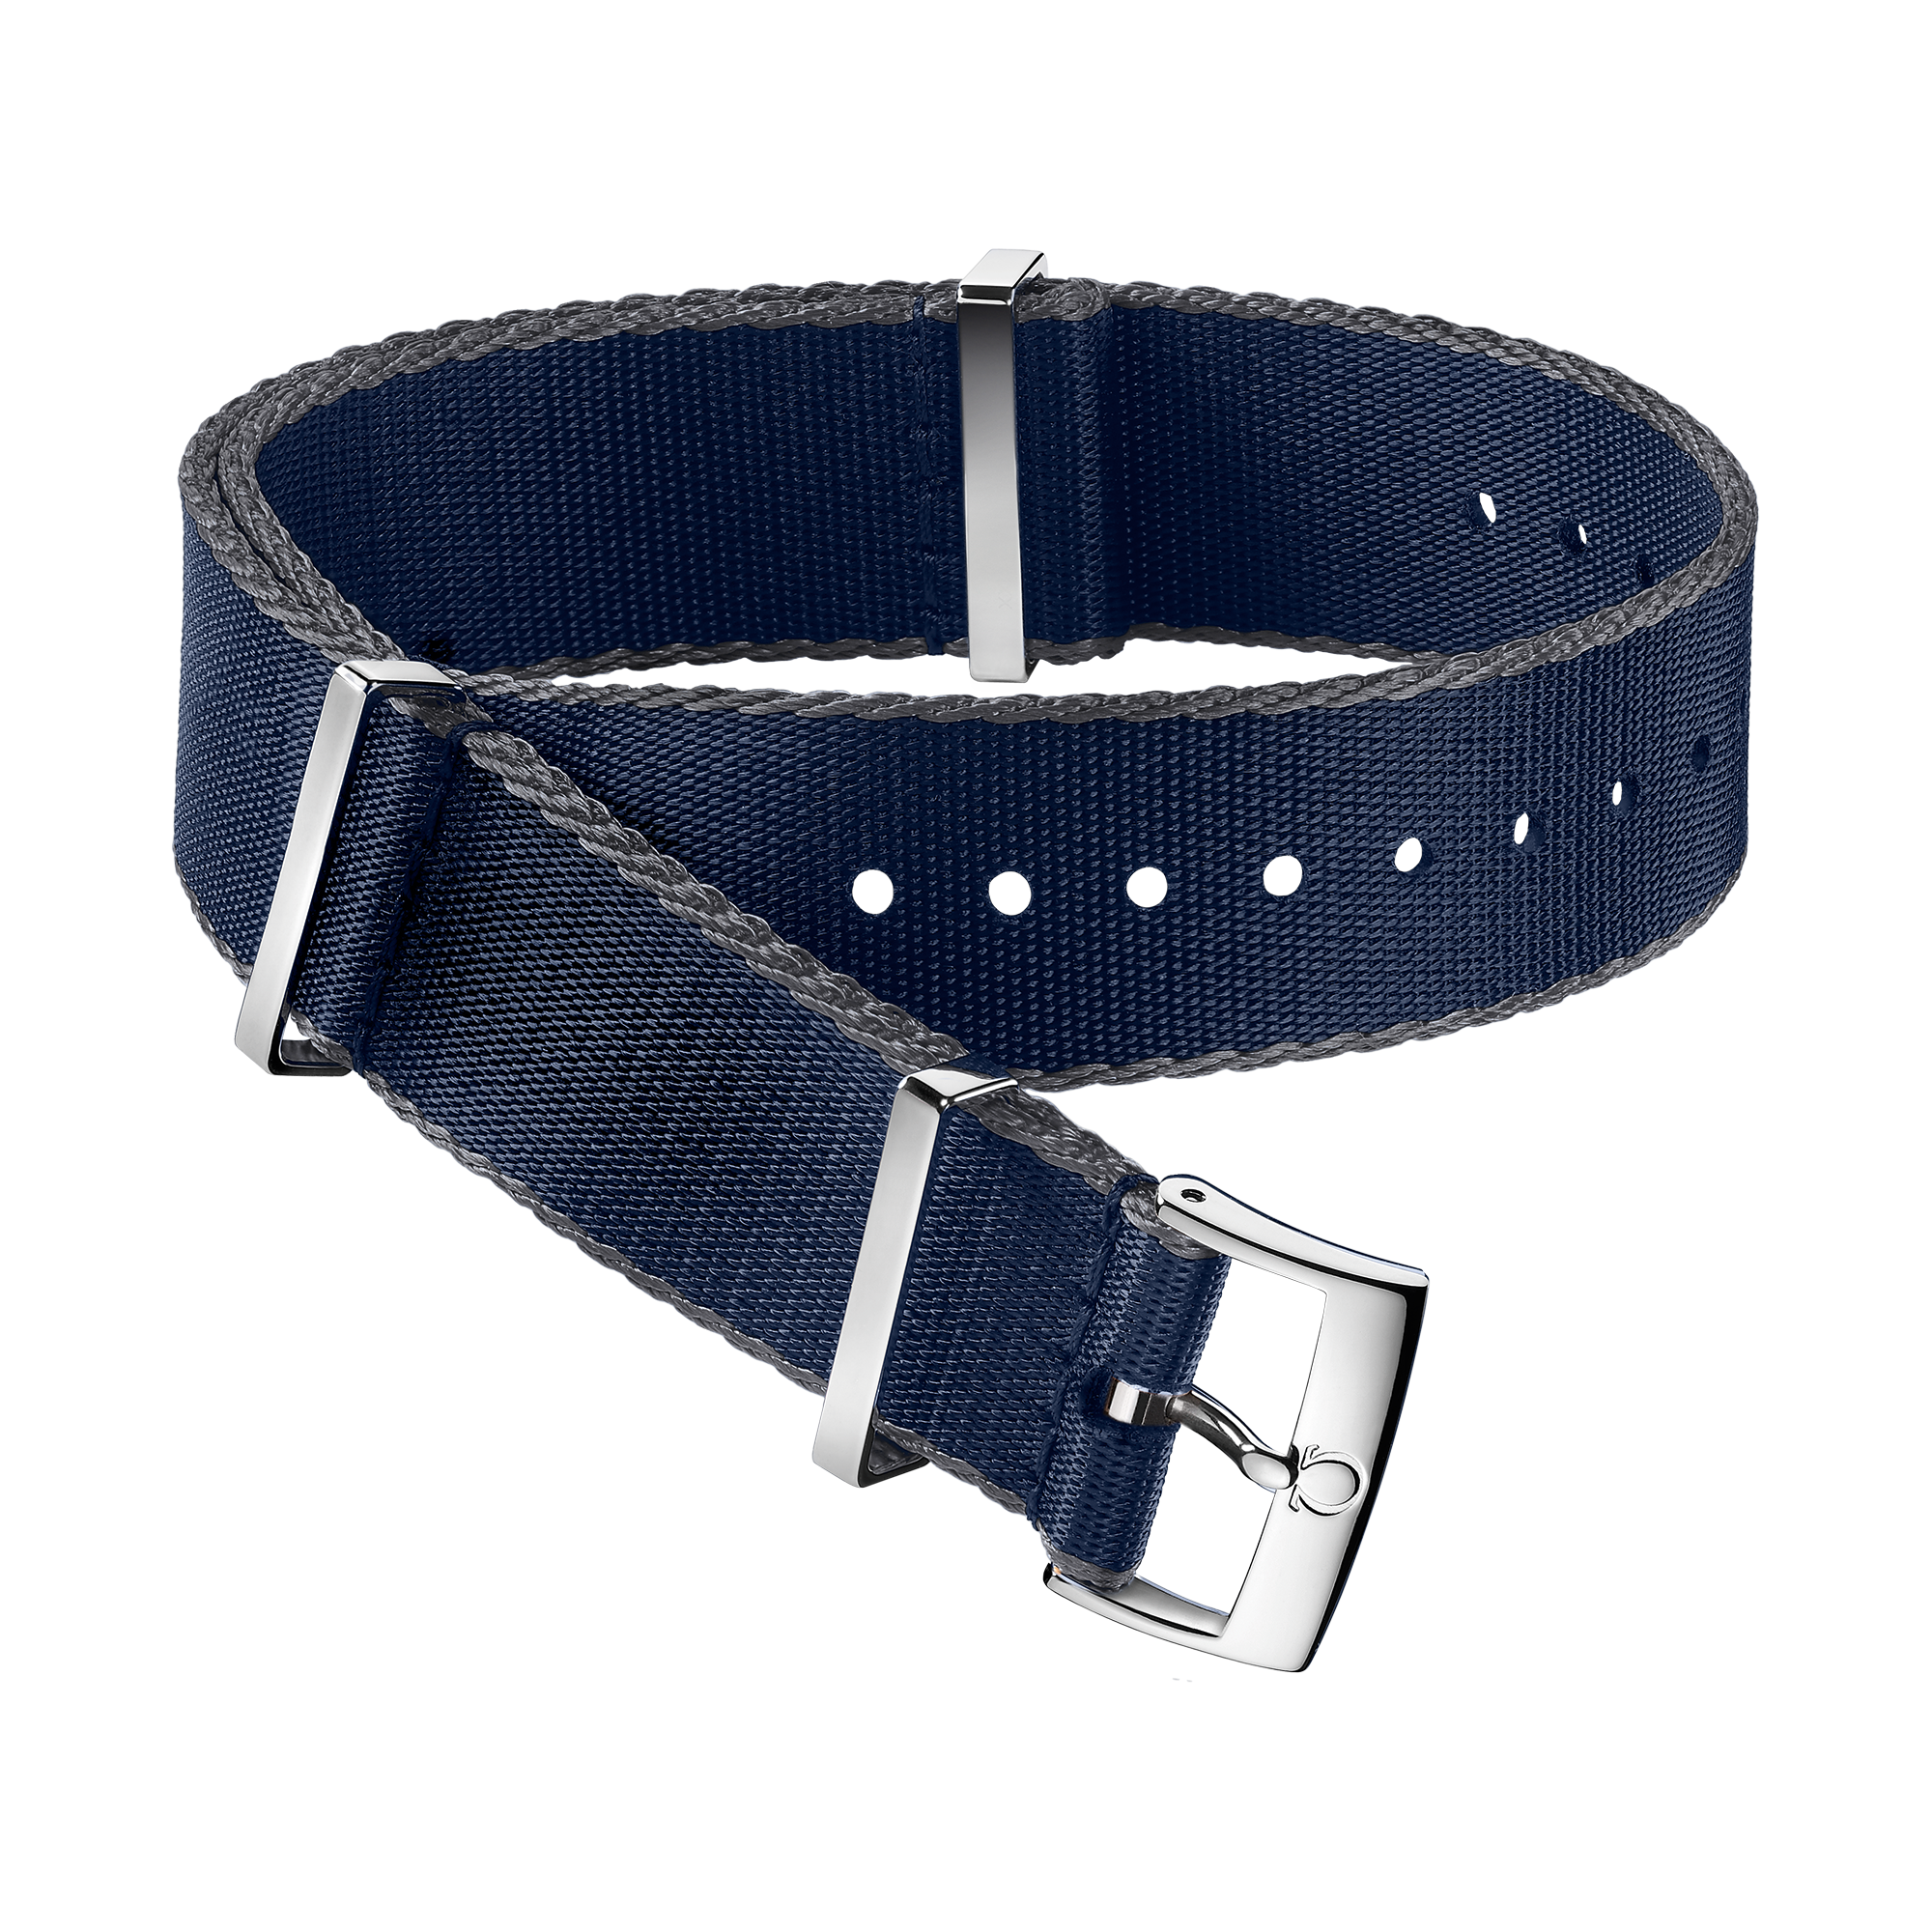 Cinturino NATO - Cinturino in poliammide blu con bordi grigi - 031CWZ007885